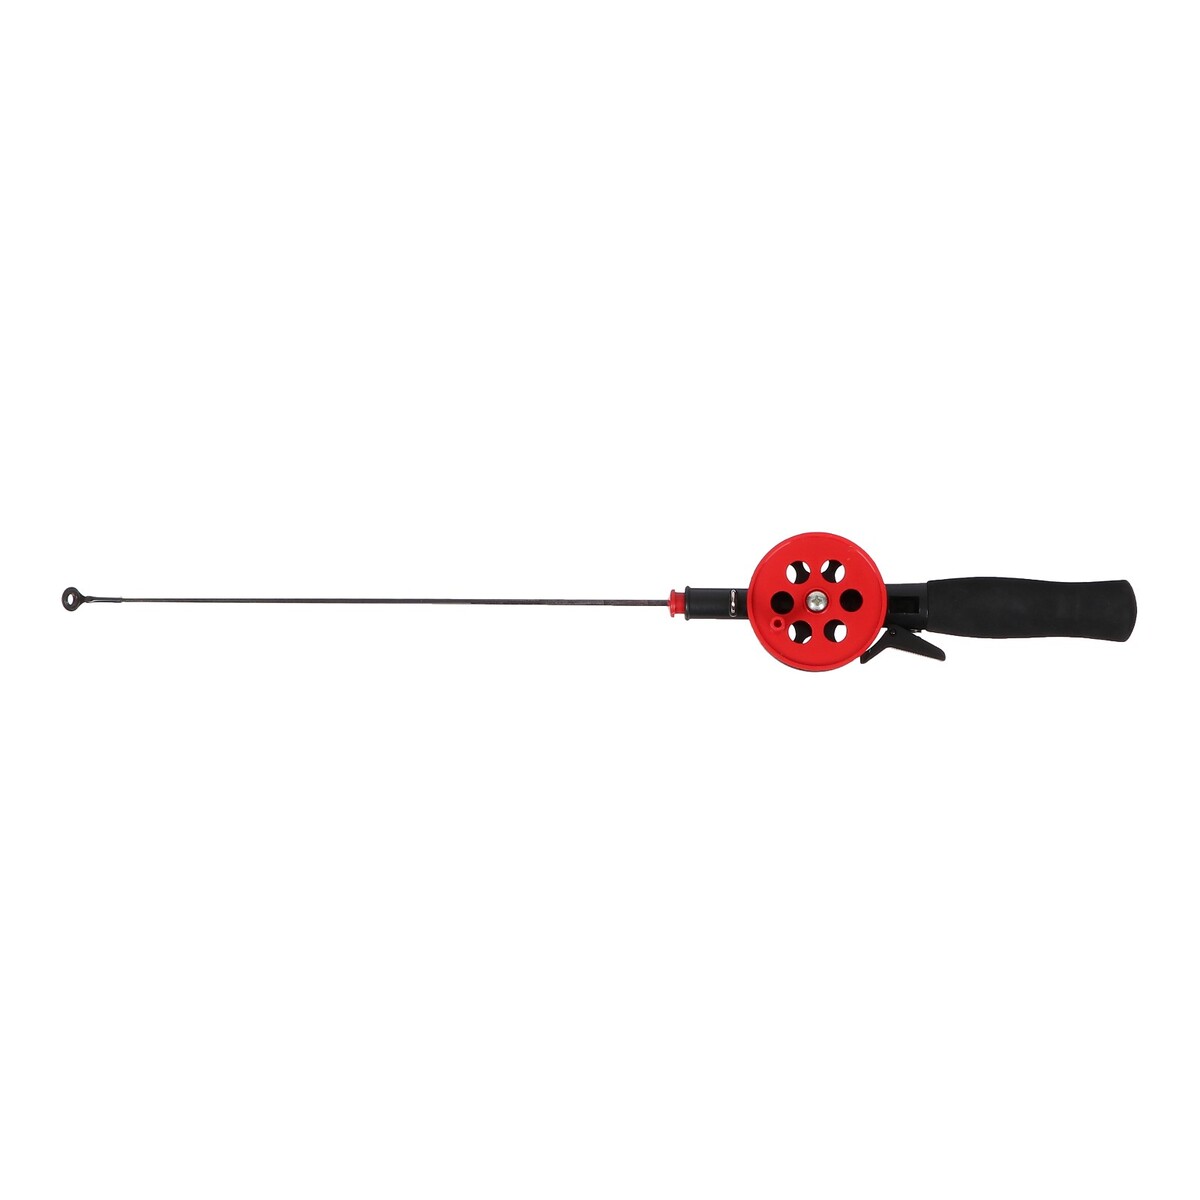 Удочка зимняя, ручка неопрен, катушка d=5.5 см, длина 42 см, цвет красный, hbf-34(1) No brand